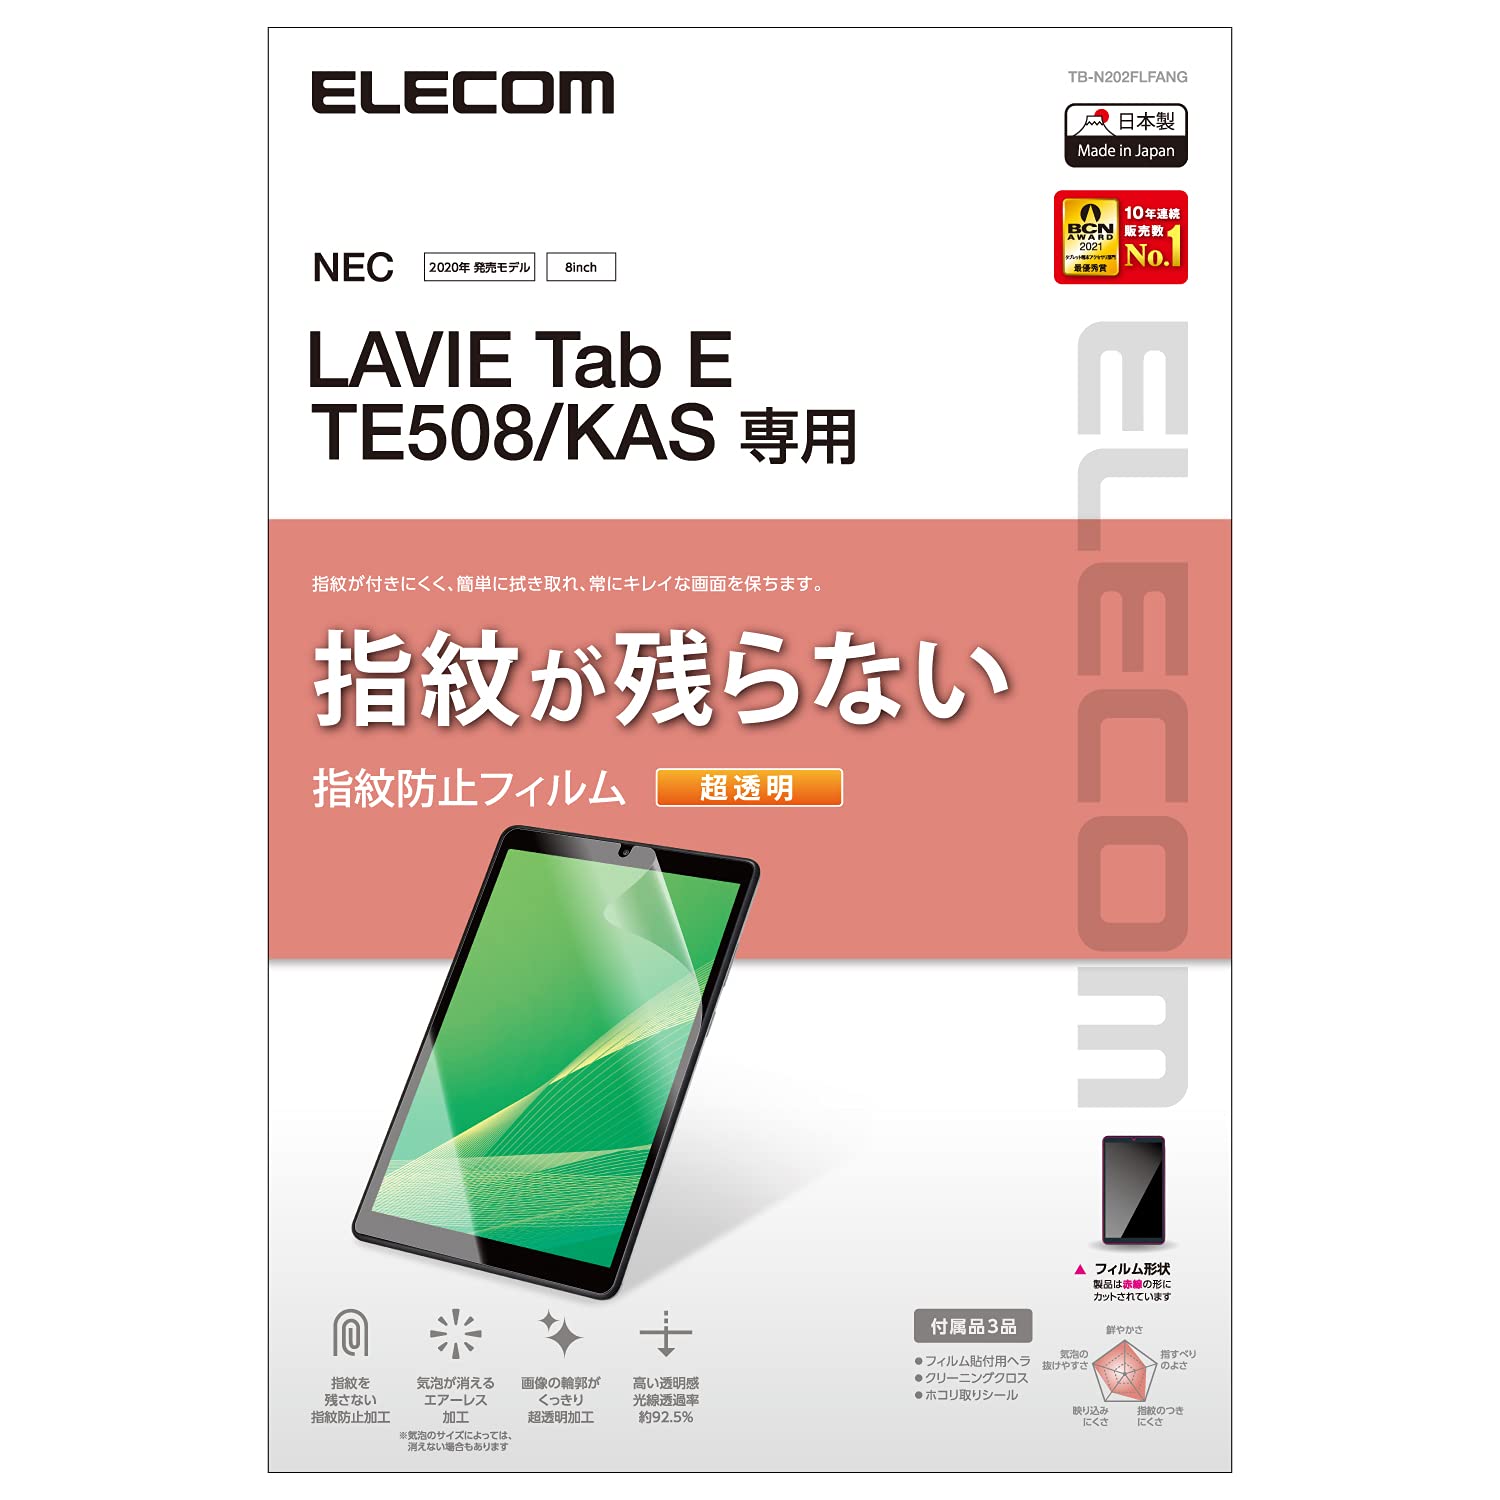 エレコム TB-N202FLFANG LAVIE Tab E TE508(KAS) 保護フィルム 防指紋 超透明